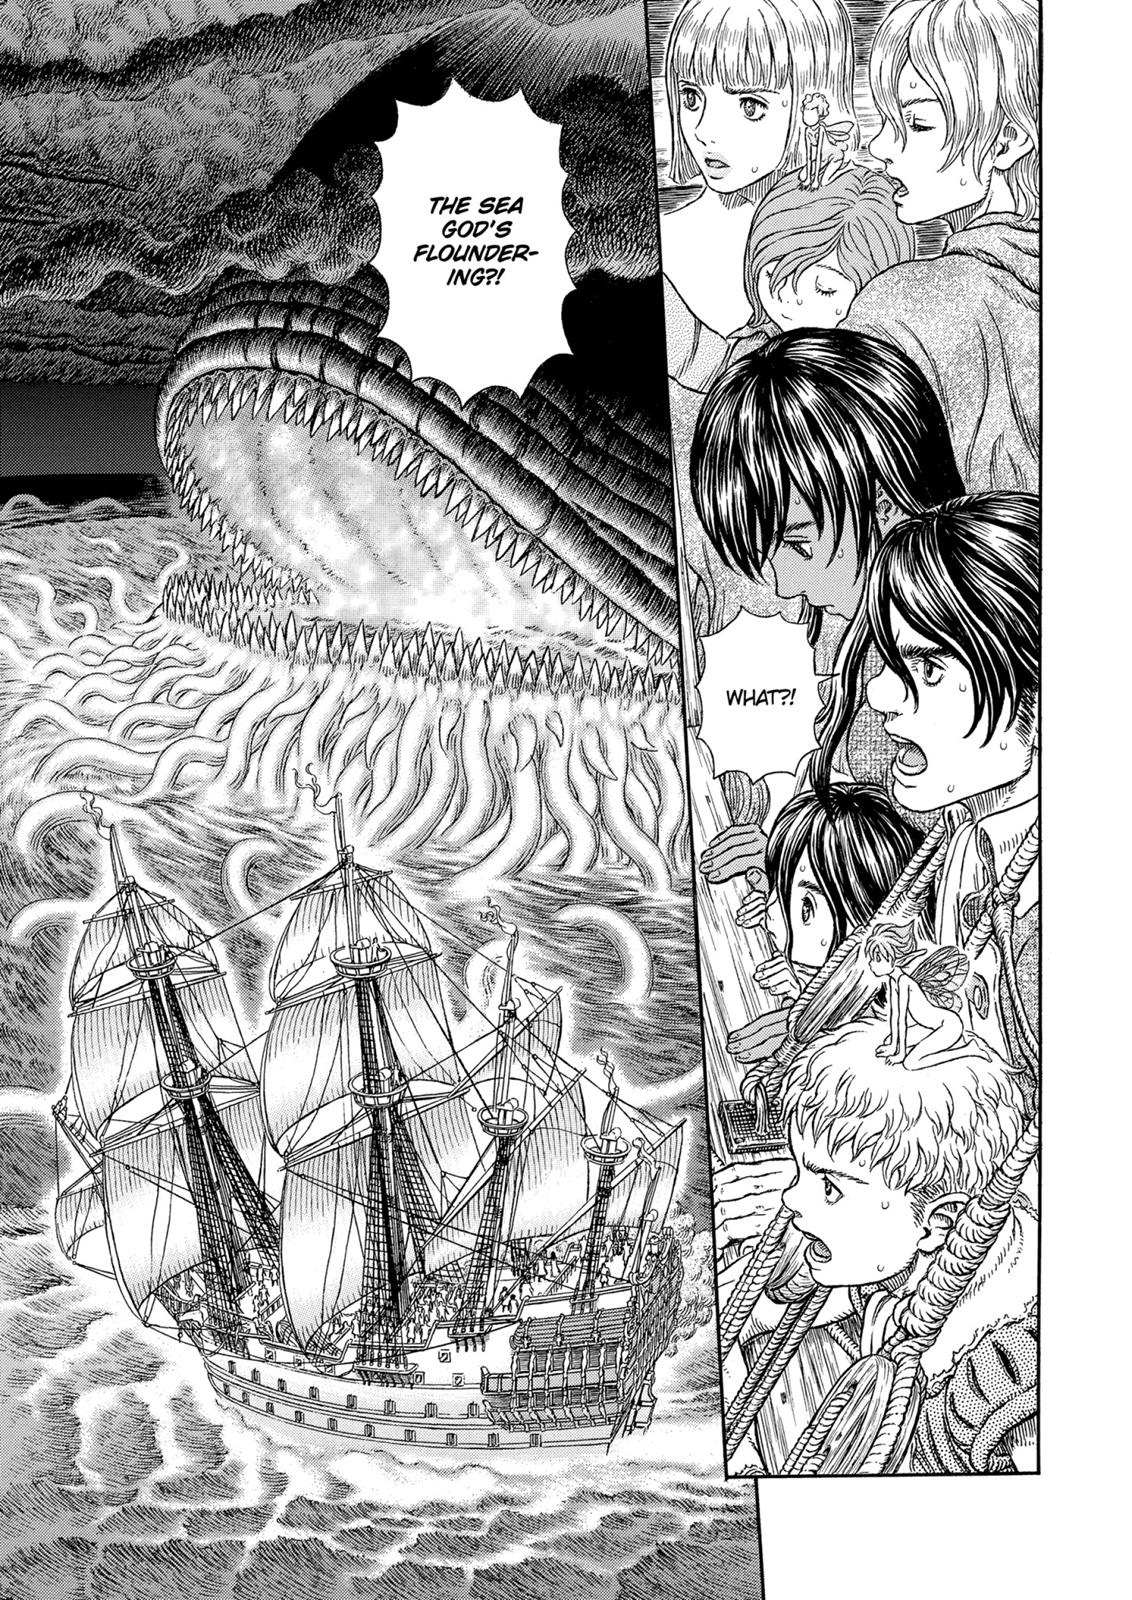 Berserk Manga Chapter 326 image 02